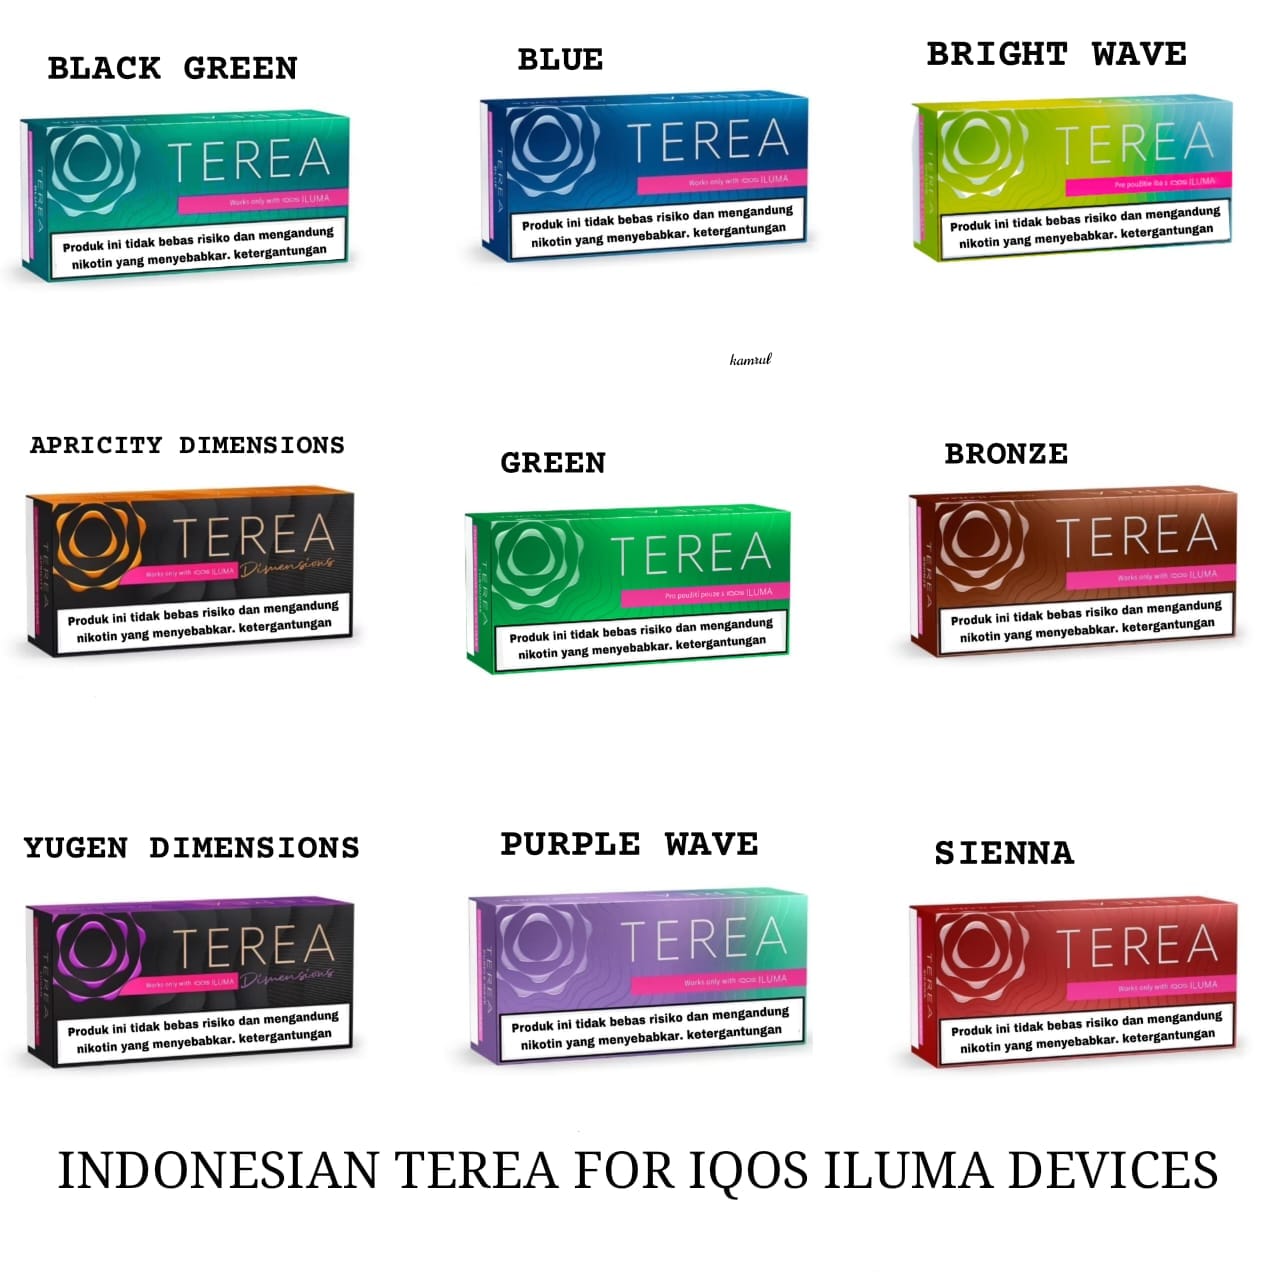 Terea Bronze Indonesian